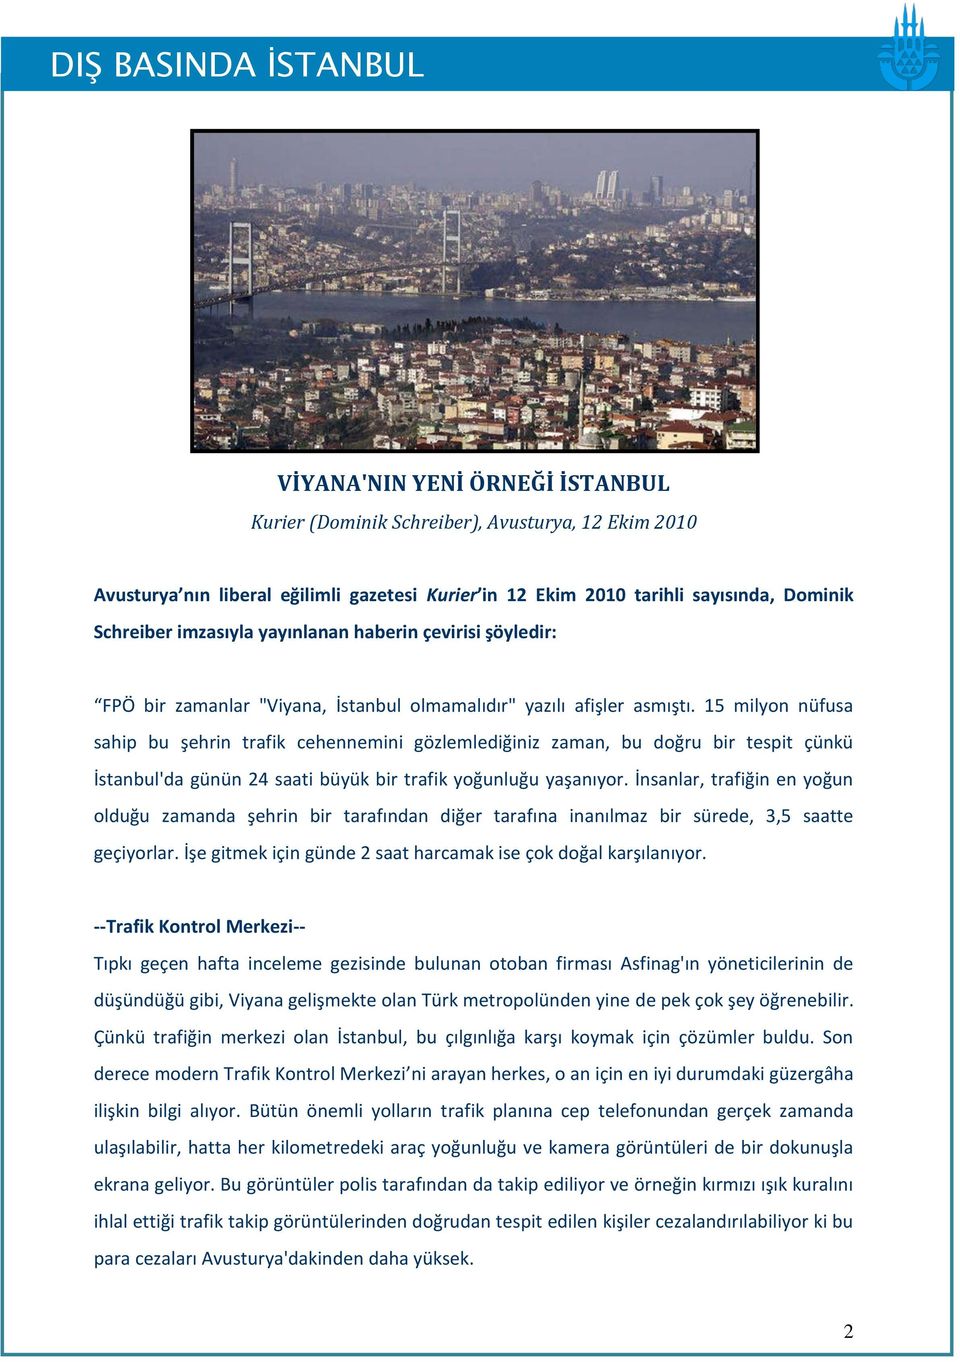 15 milyon nüfusa sahip bu şehrin trafik cehennemini gözlemlediğiniz zaman, bu doğru bir tespit çünkü İstanbul'da günün 24 saati büyük bir trafik yoğunluğu yaşanıyor.